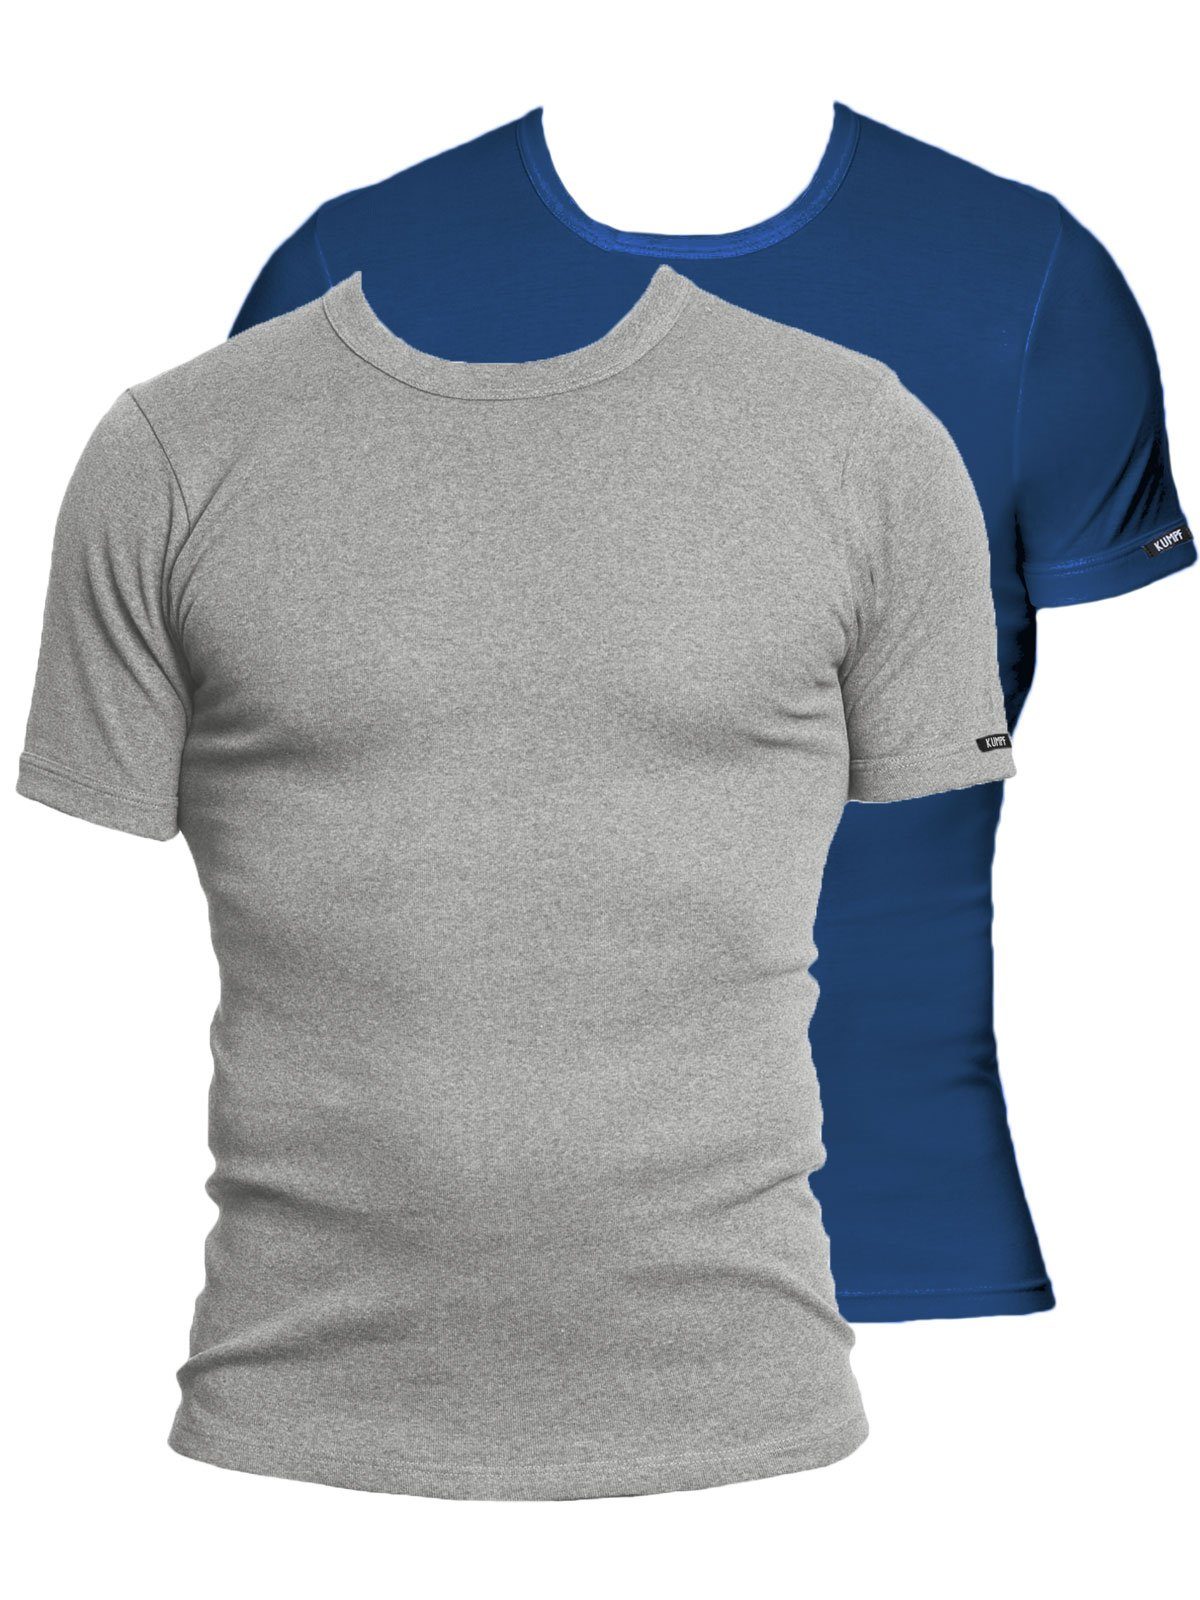 KUMPF Unterziehshirt 2er Sparpack Herren T-Shirt Bio Cotton (Spar-Set, 2-St) hohe Markenqualität darkblue stahlgrau-melange | Unterhemden